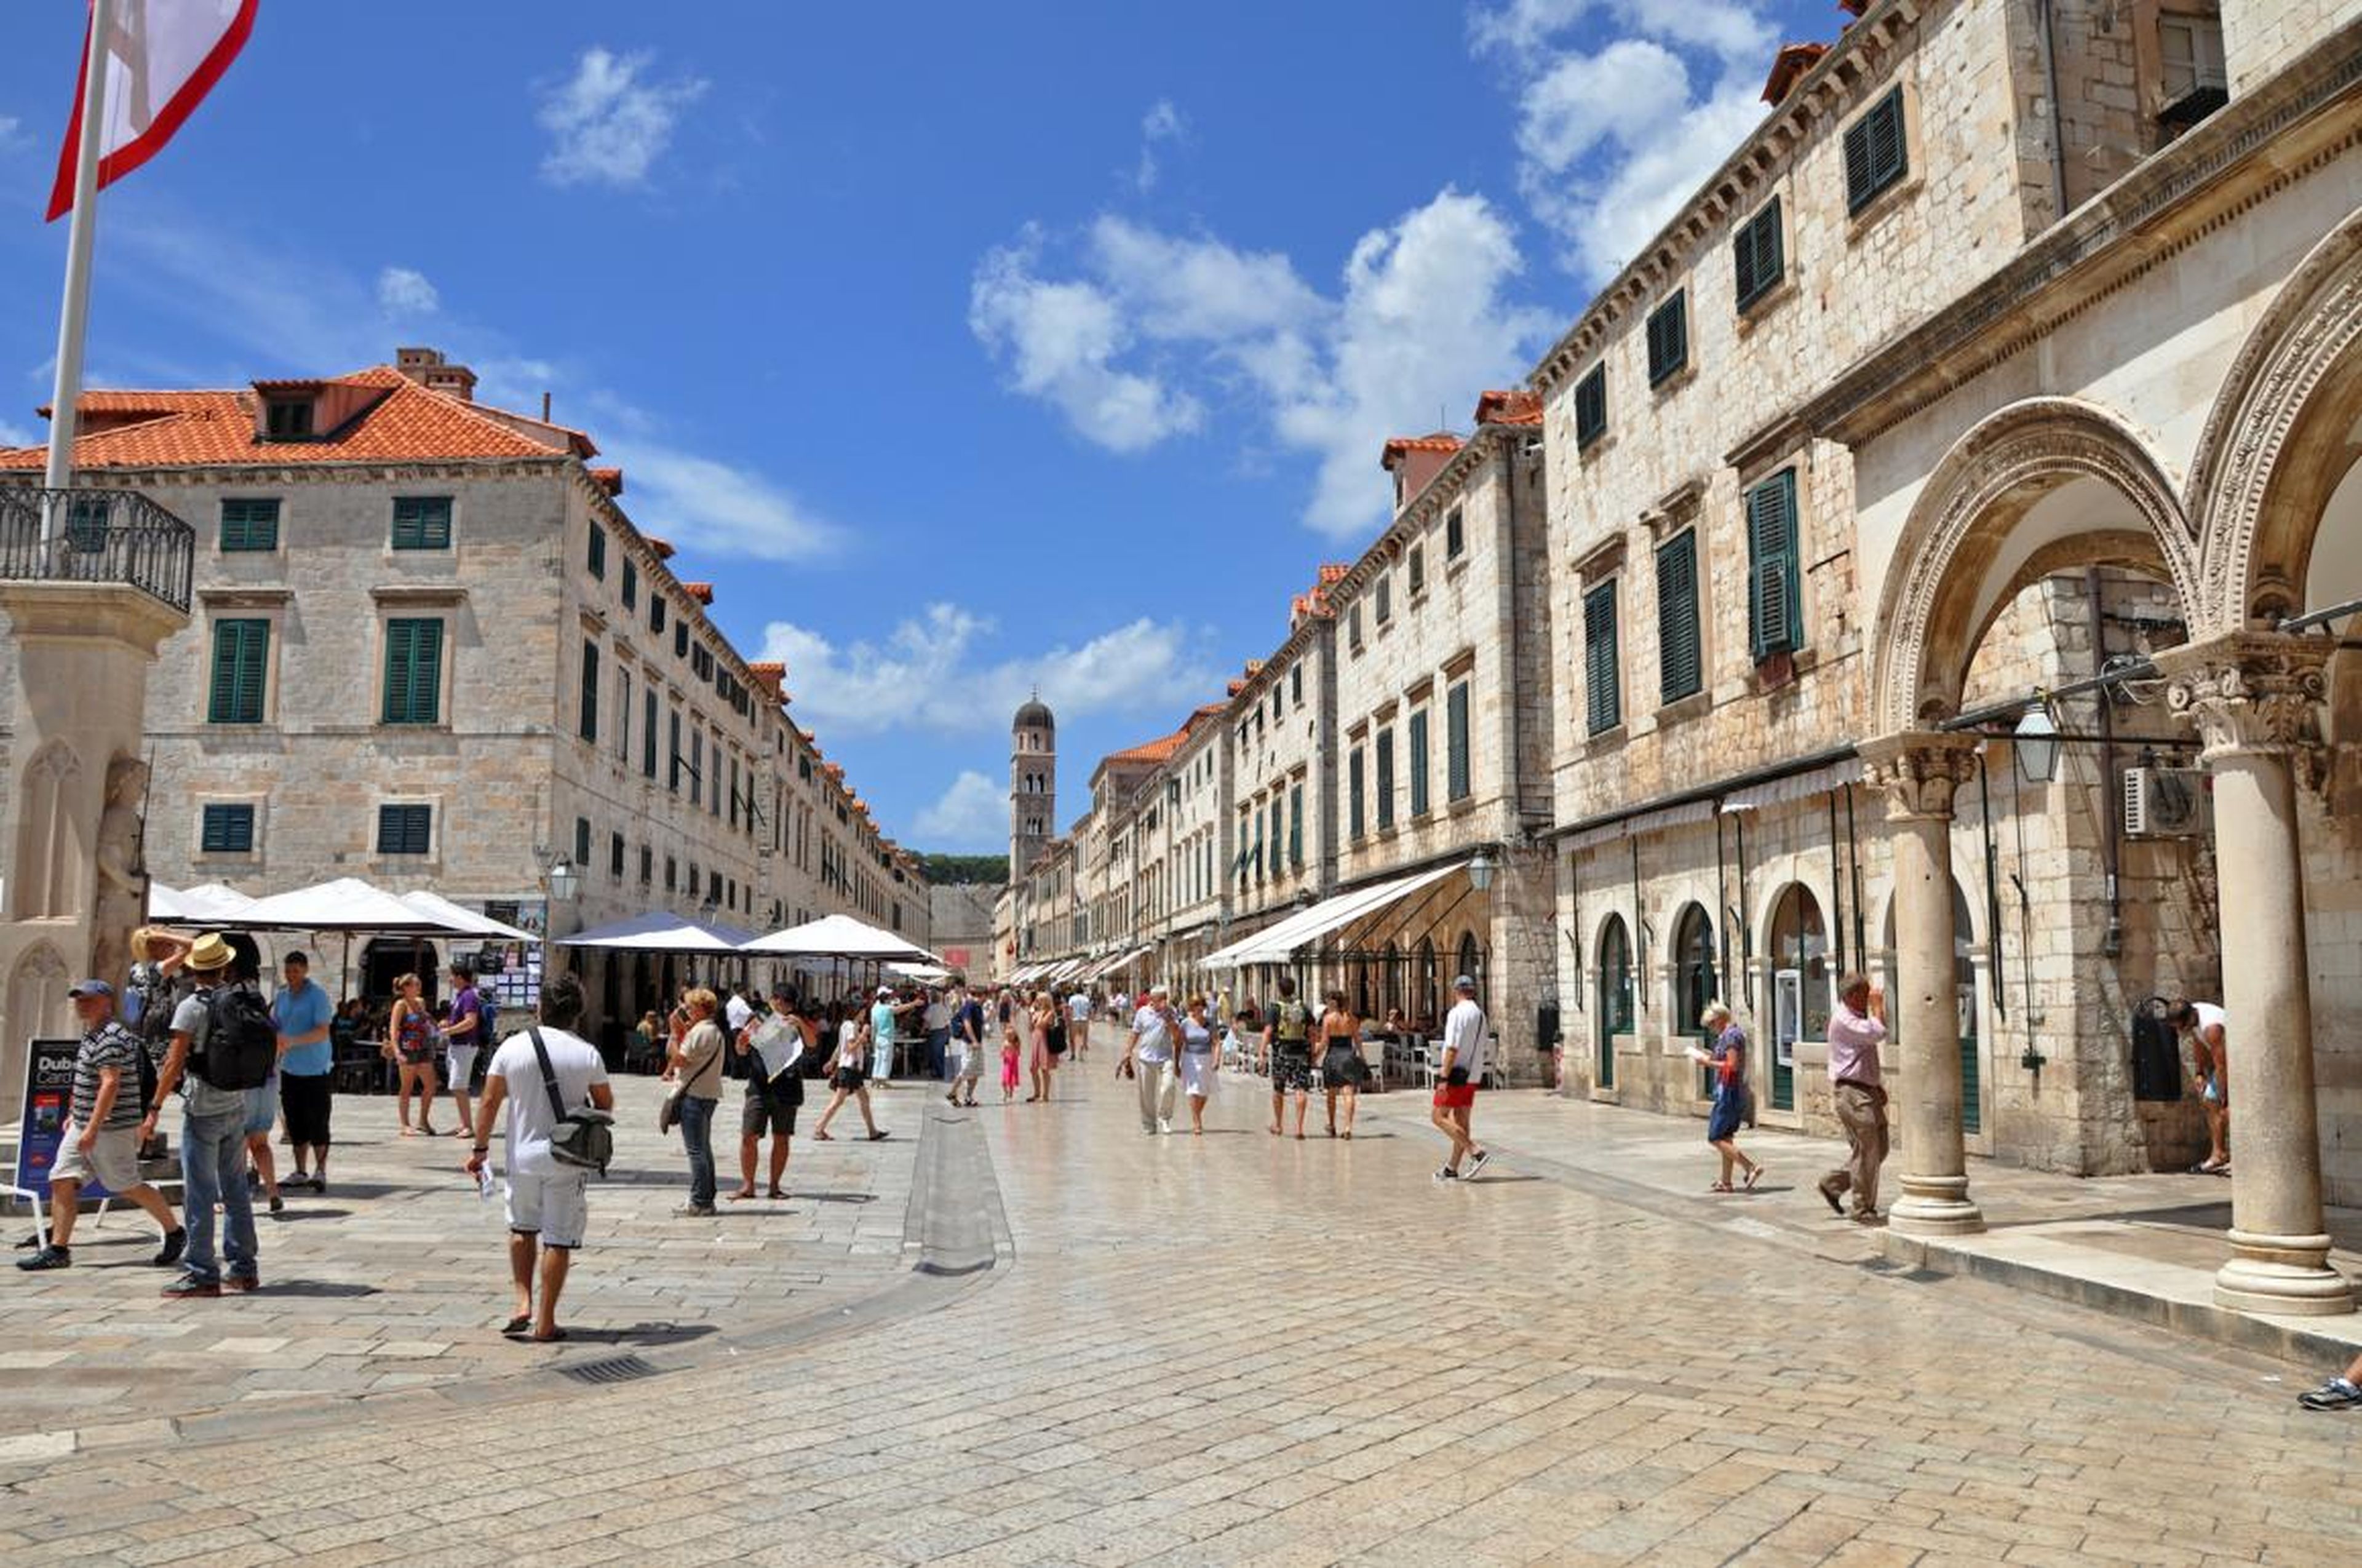 Juego de Tronos ha incrementado la popularidad de Dubrovnik.